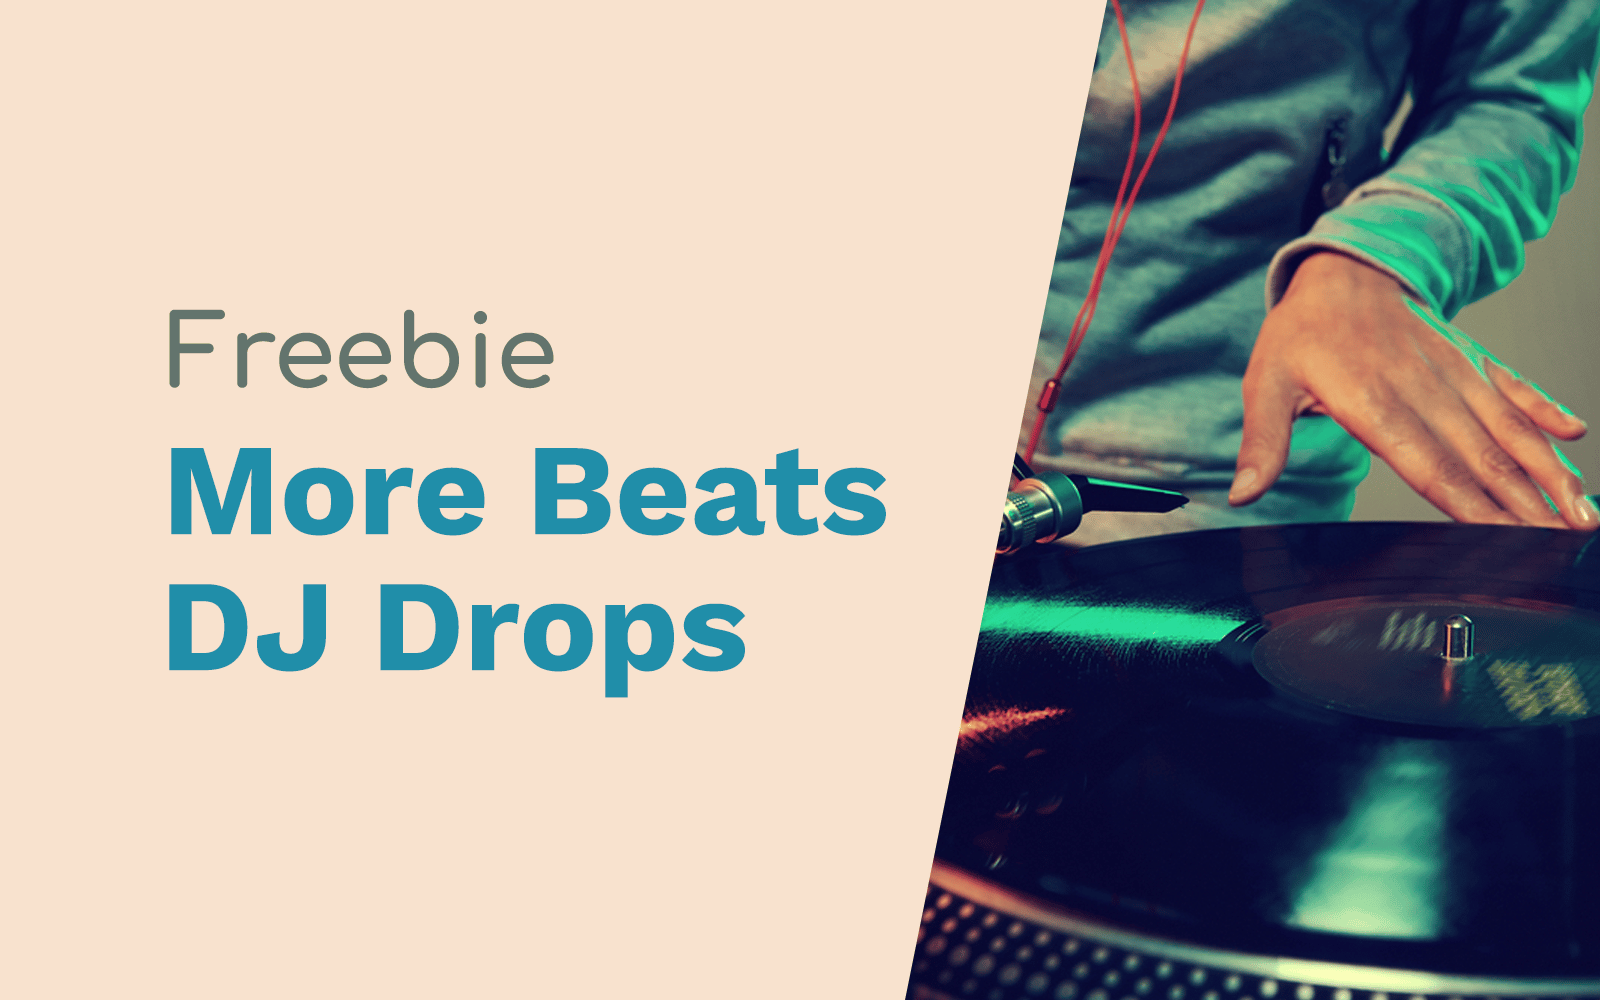 More Beats DJ Drops DJ Drops dj drops Music Radio Creative